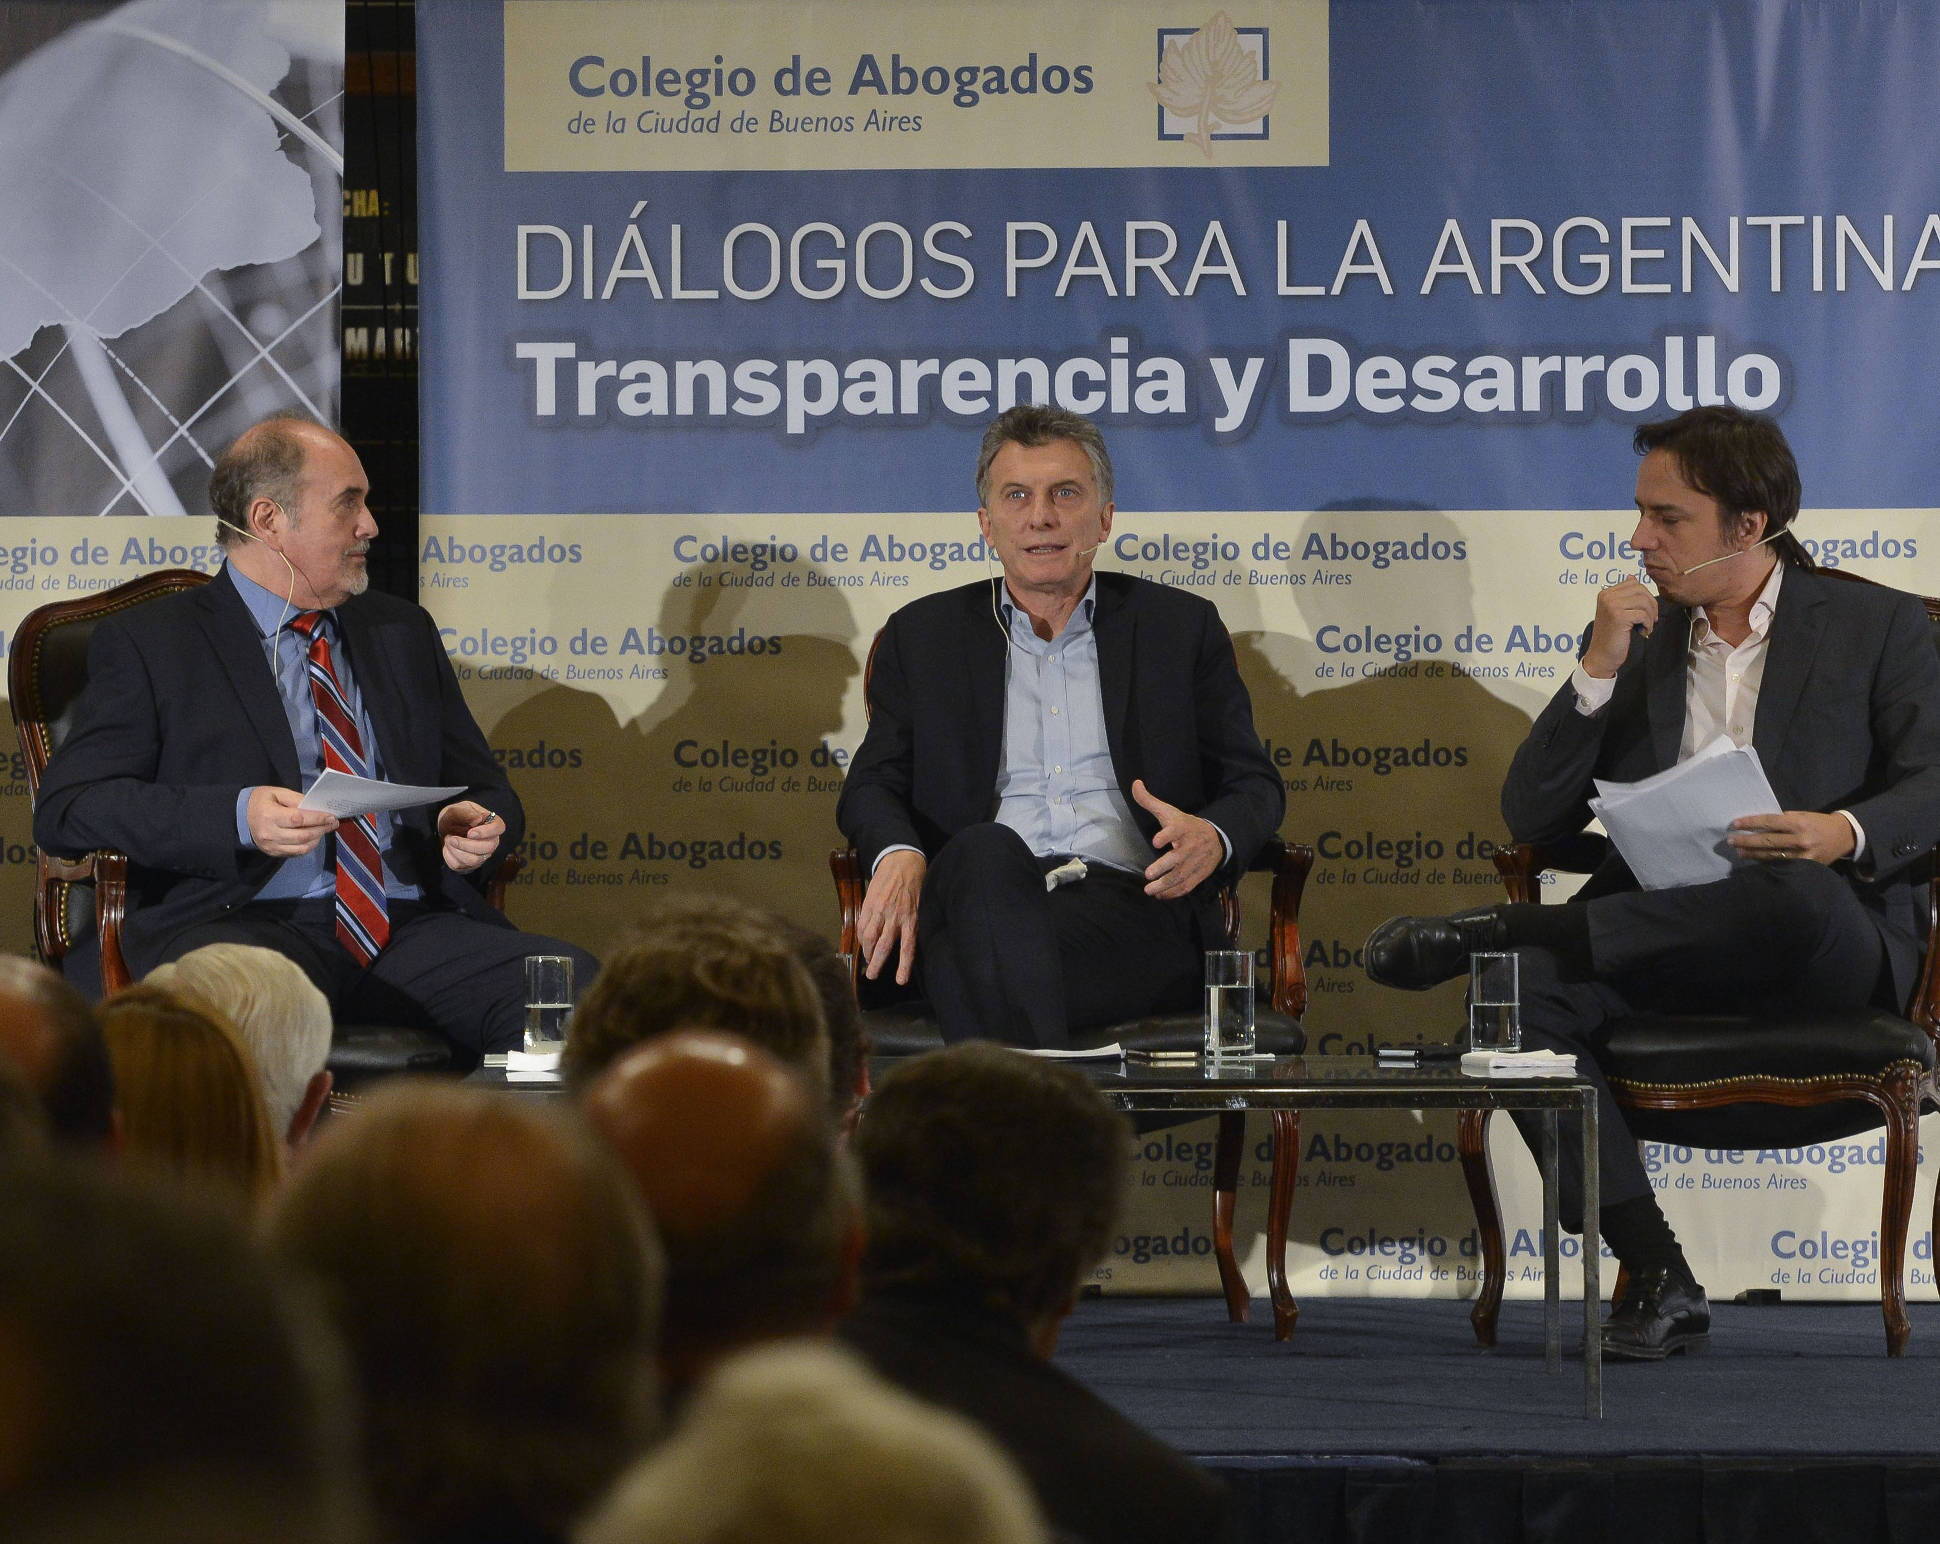 El Presidente participó del evento Diálogos para la Argentina